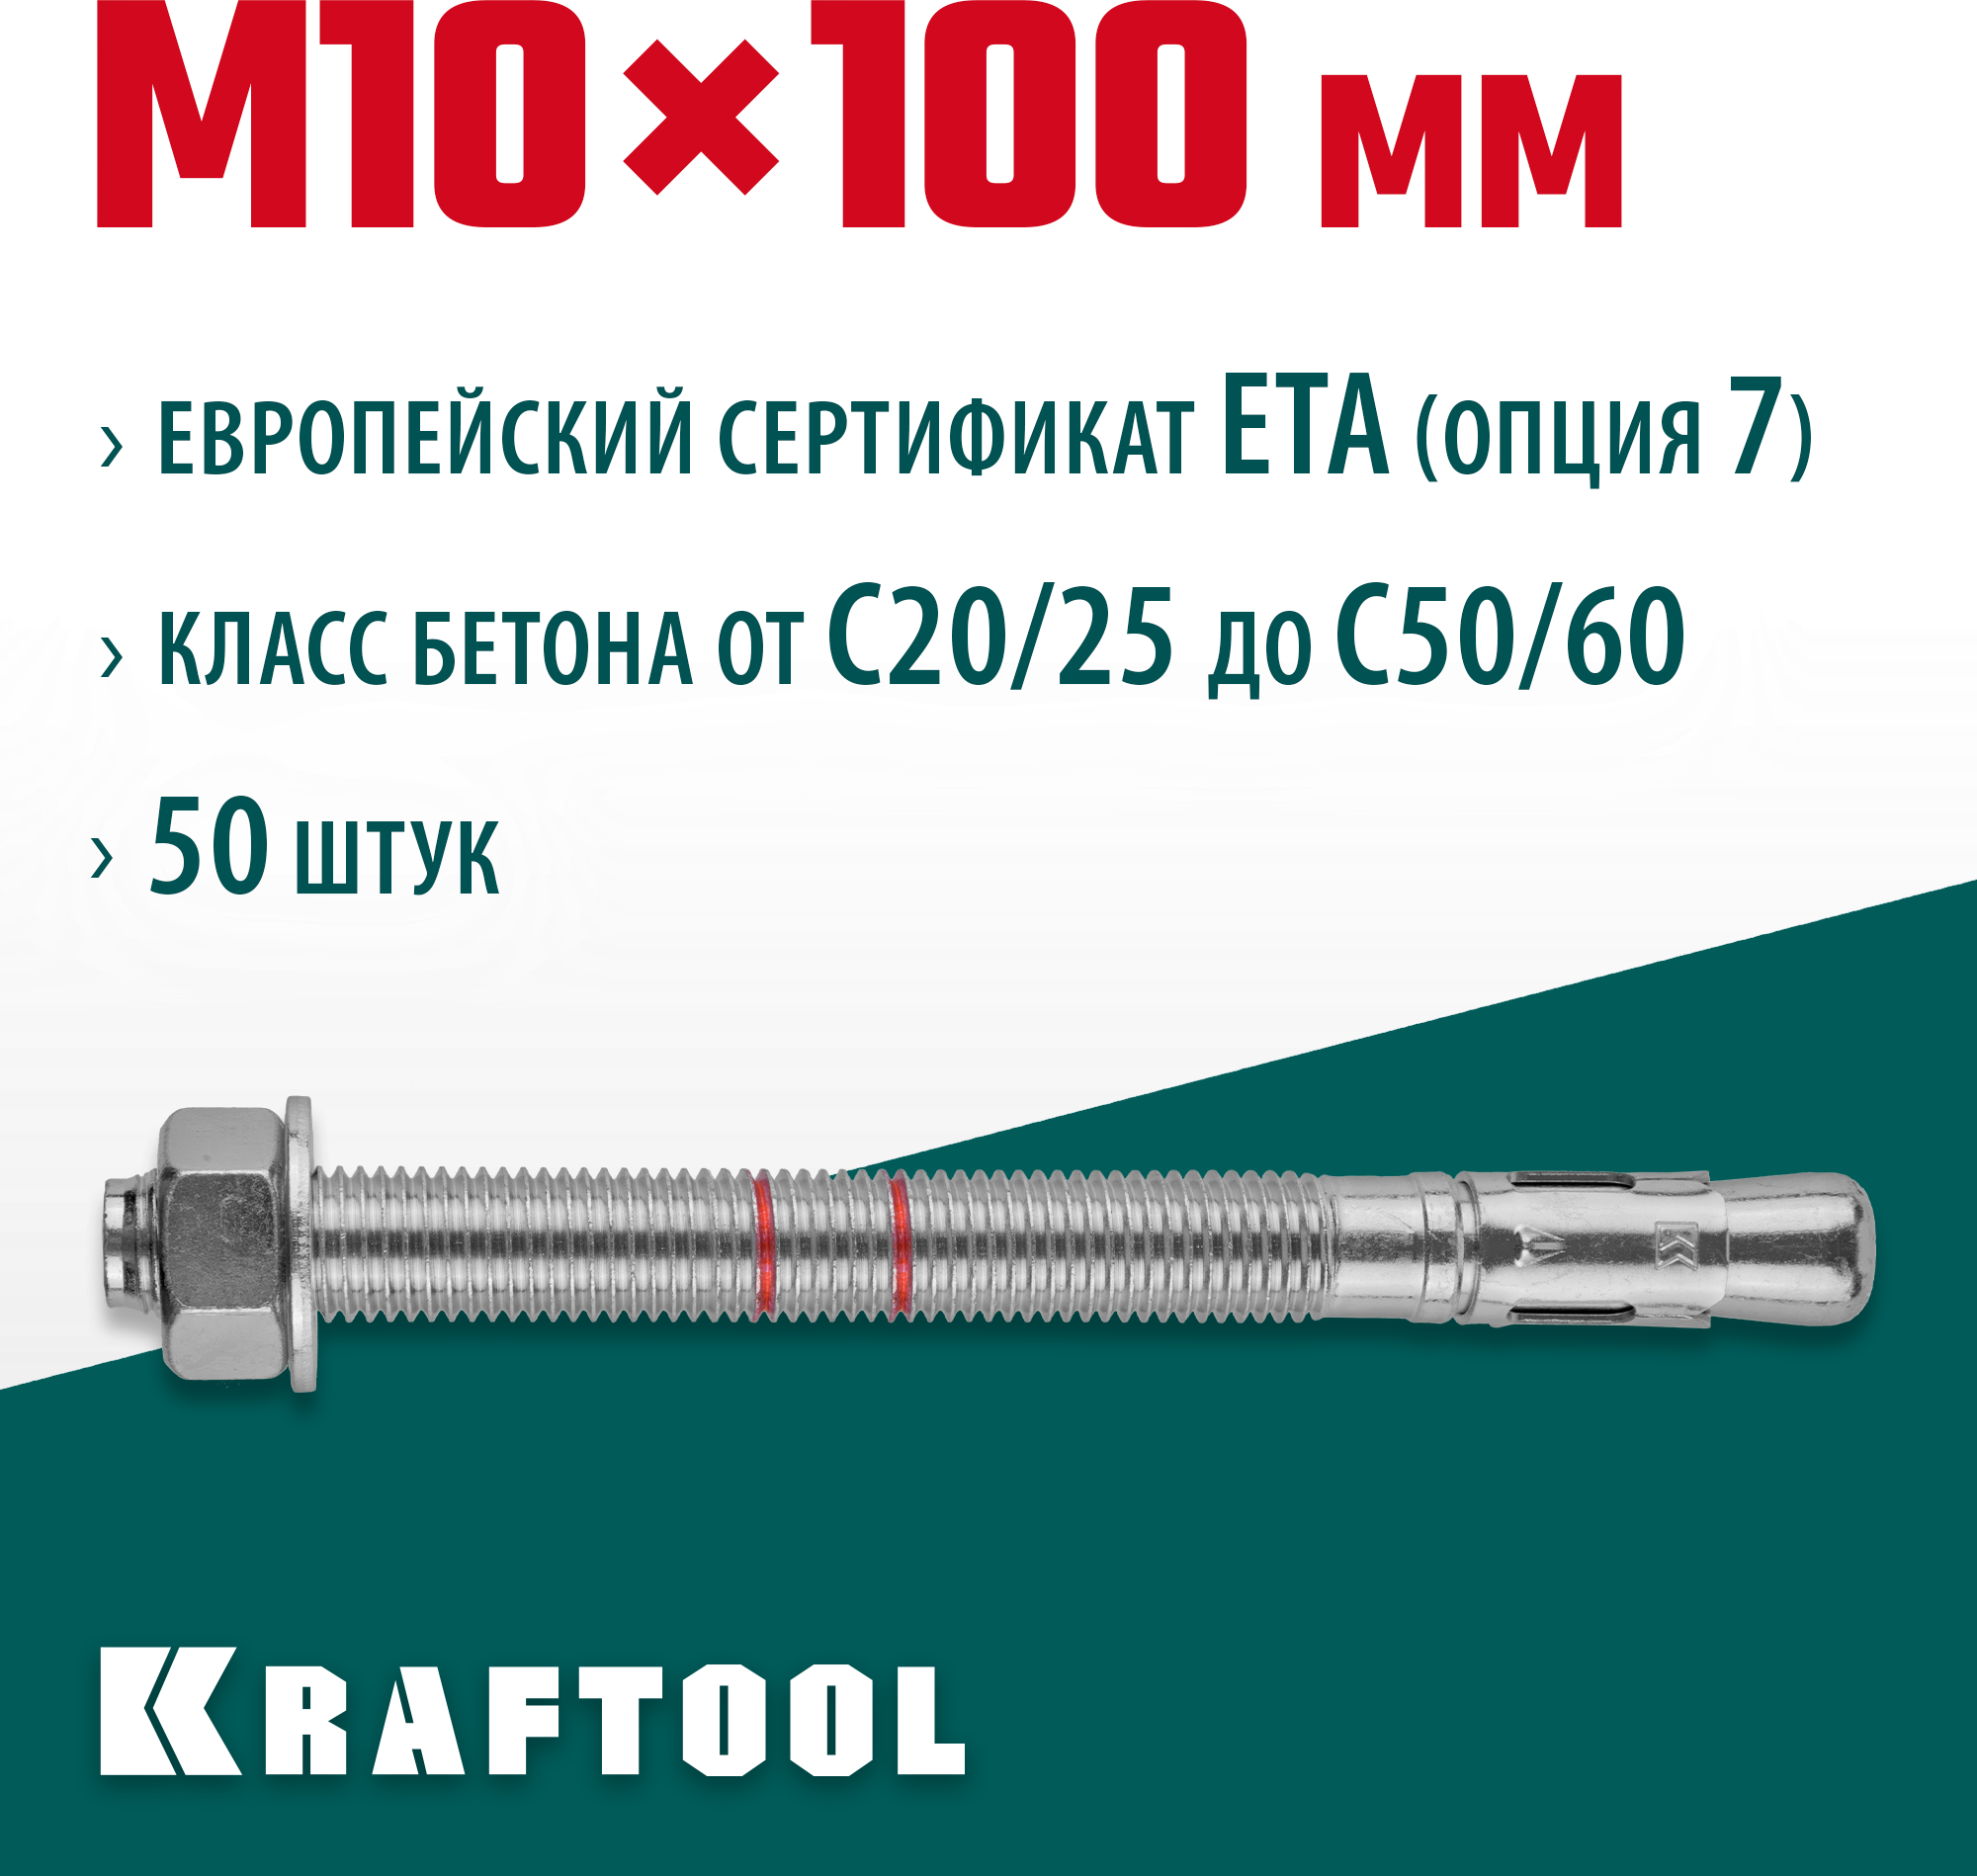 KRAFTOOL М10x100, ETA Опция 7, 50 шт, анкер клиновой 302184-10-100